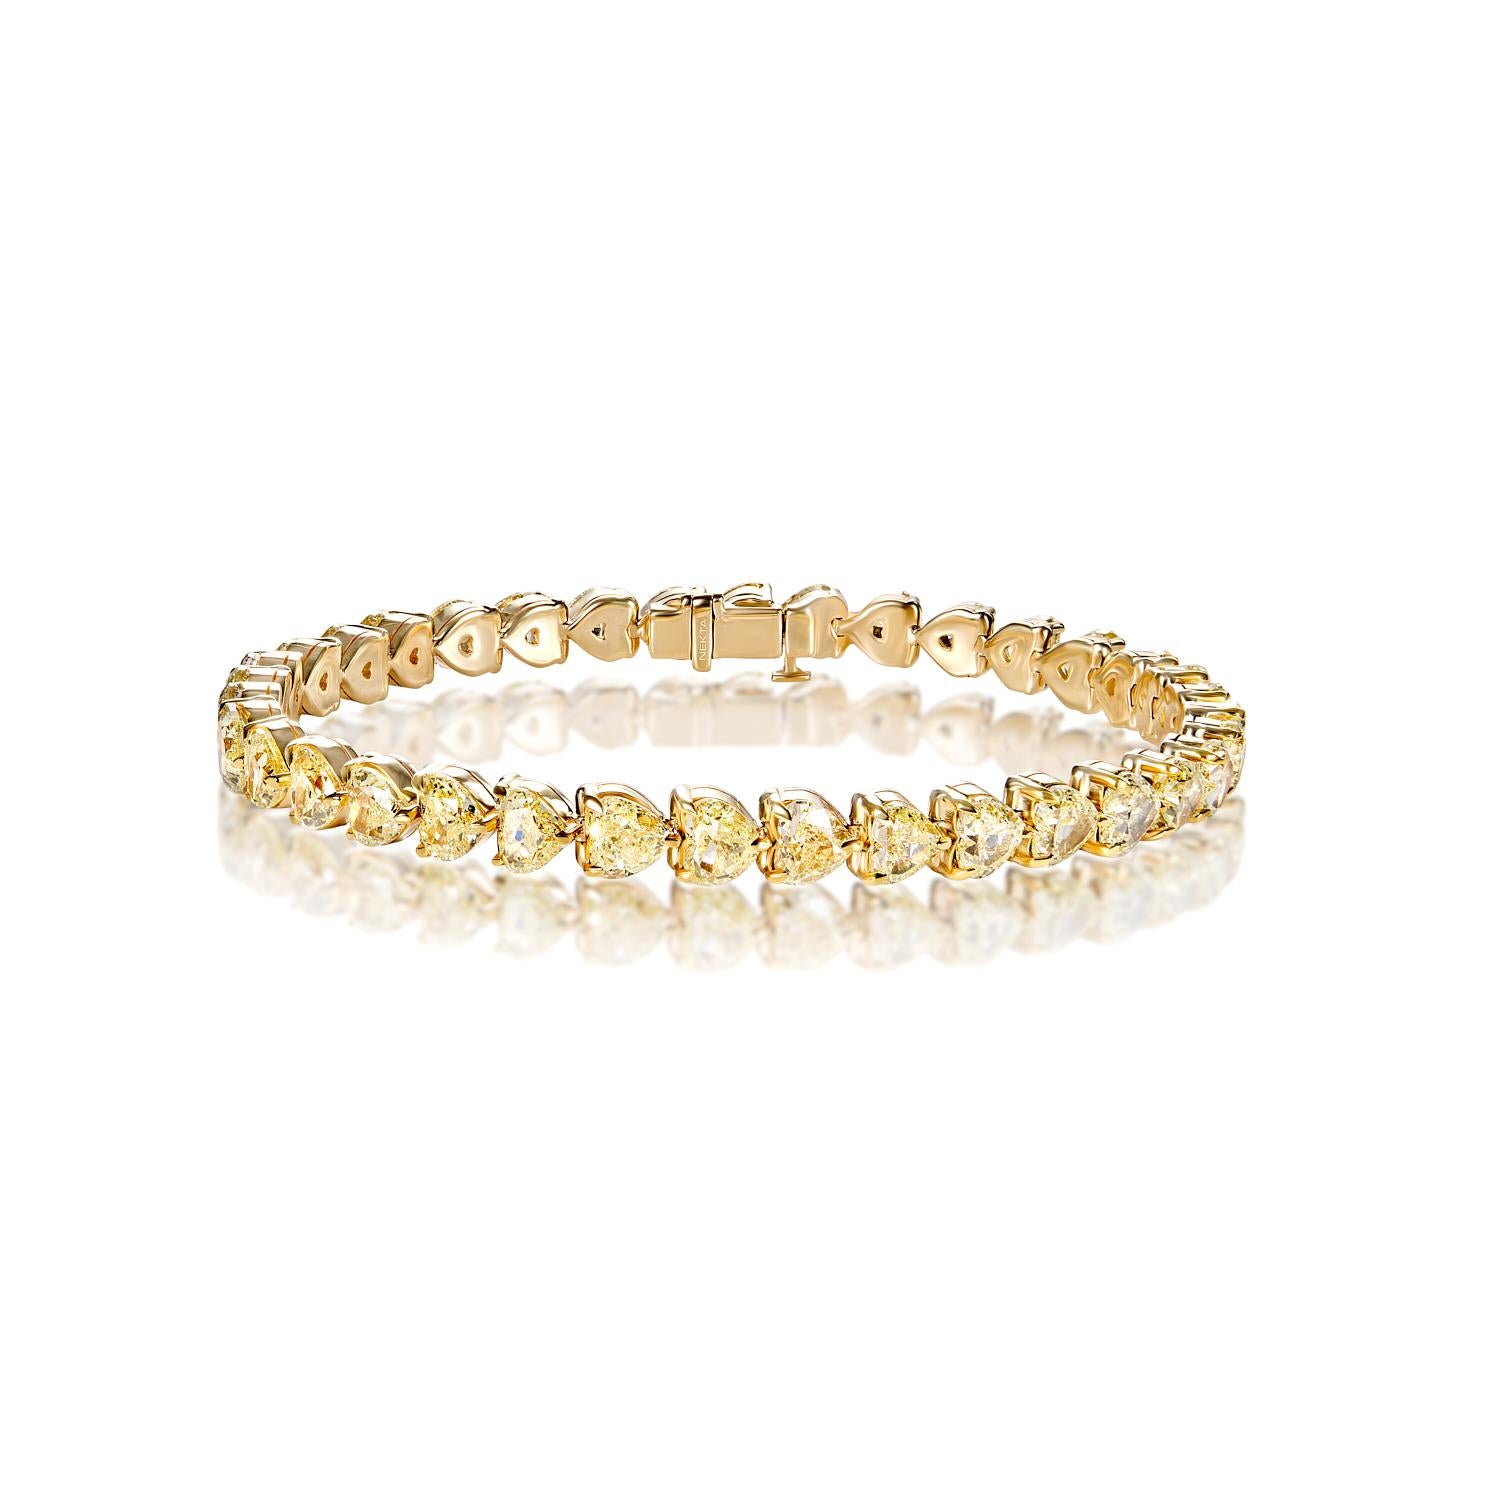 Le bracelet tennis HOLLAND 18 carats à une rangée de diamants présente des DIAMONDS COMBINE MIX SHAPE brillants pesant au total environ 18 carats, sertis dans de l'or jaune 18 carats.

Le style :
Diamants
Taille du diamant : 18,36 carats
Couleur :